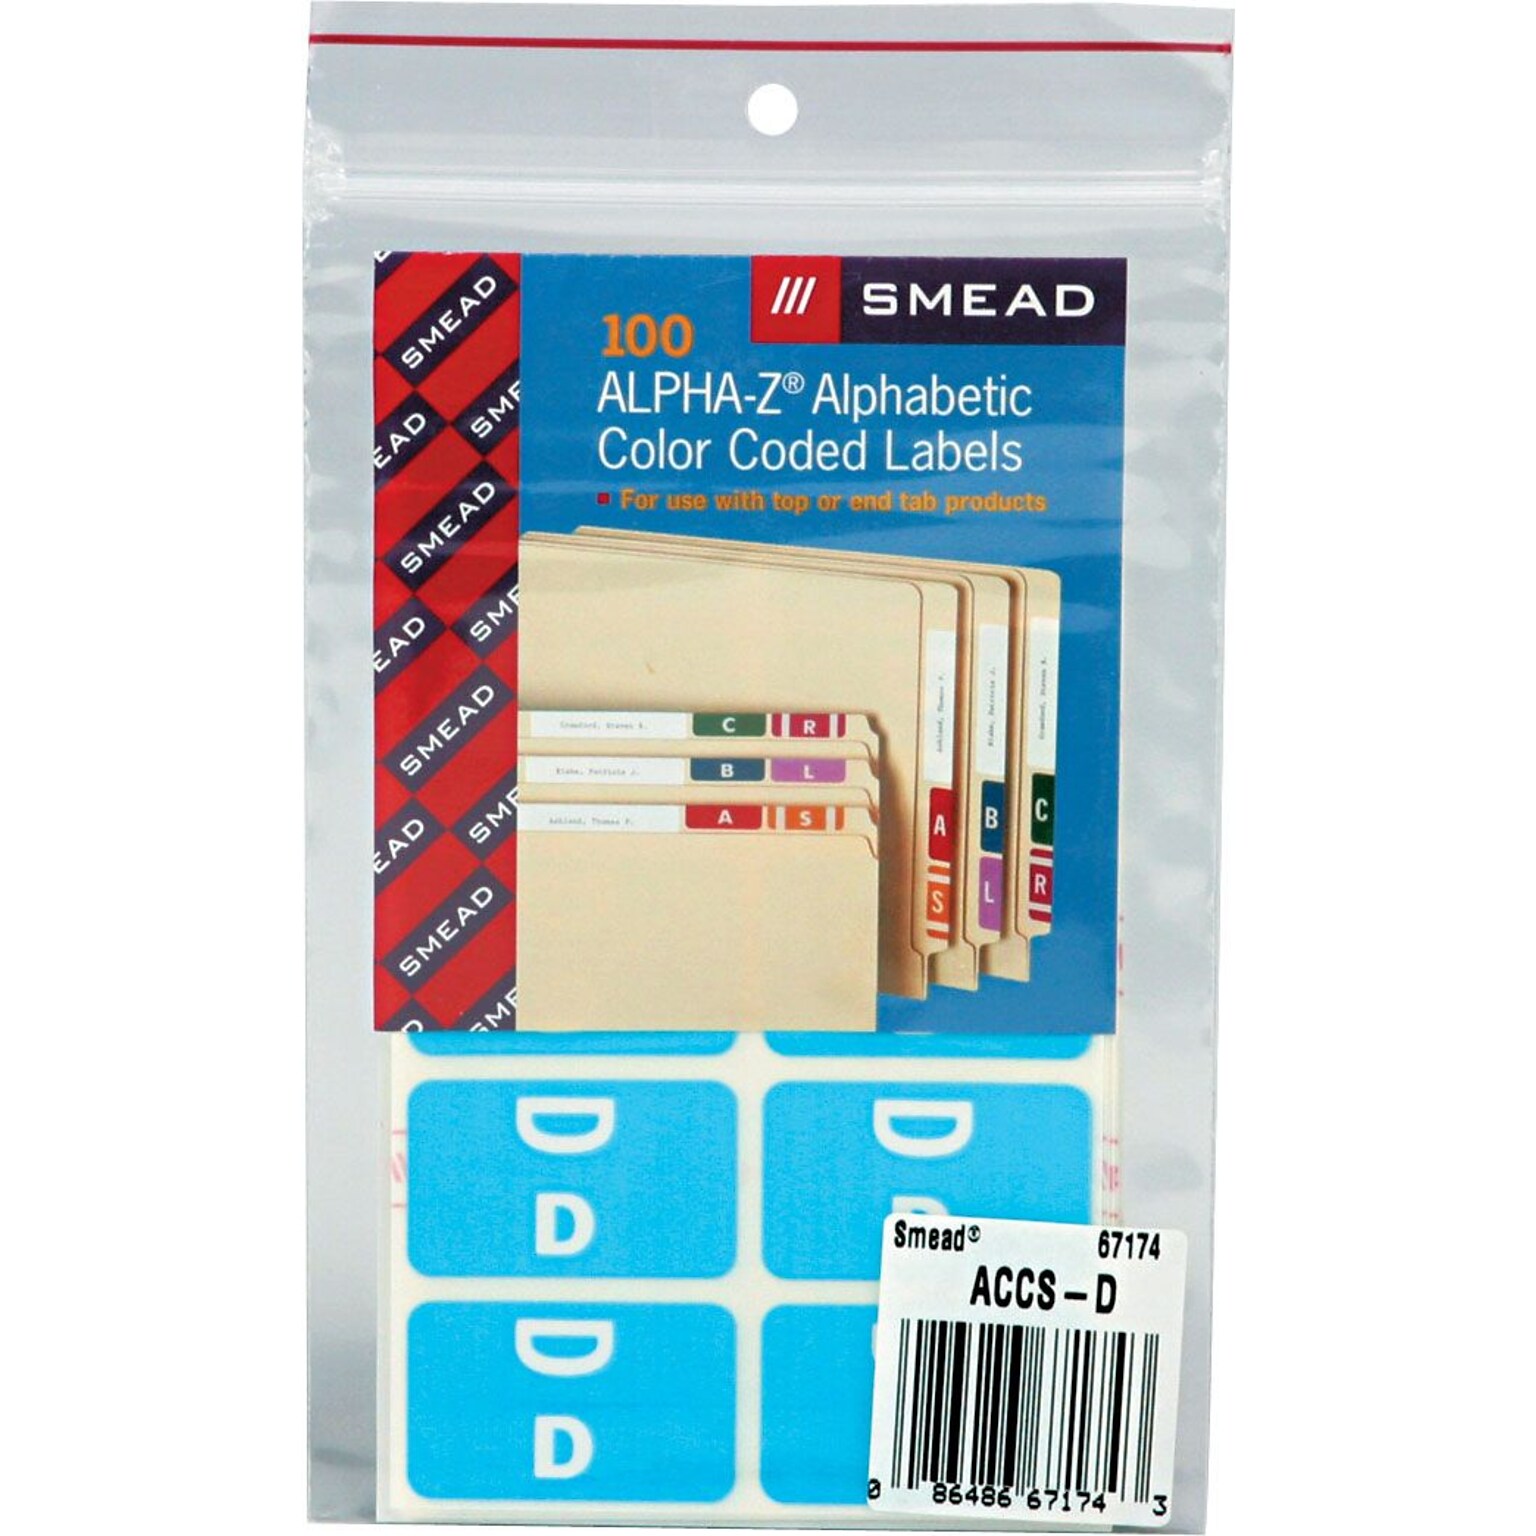 Smead AlphaZ ACCS Color-Coded Alphabetic Labels, D, Light Blue w/White, 100/Pack (67174)